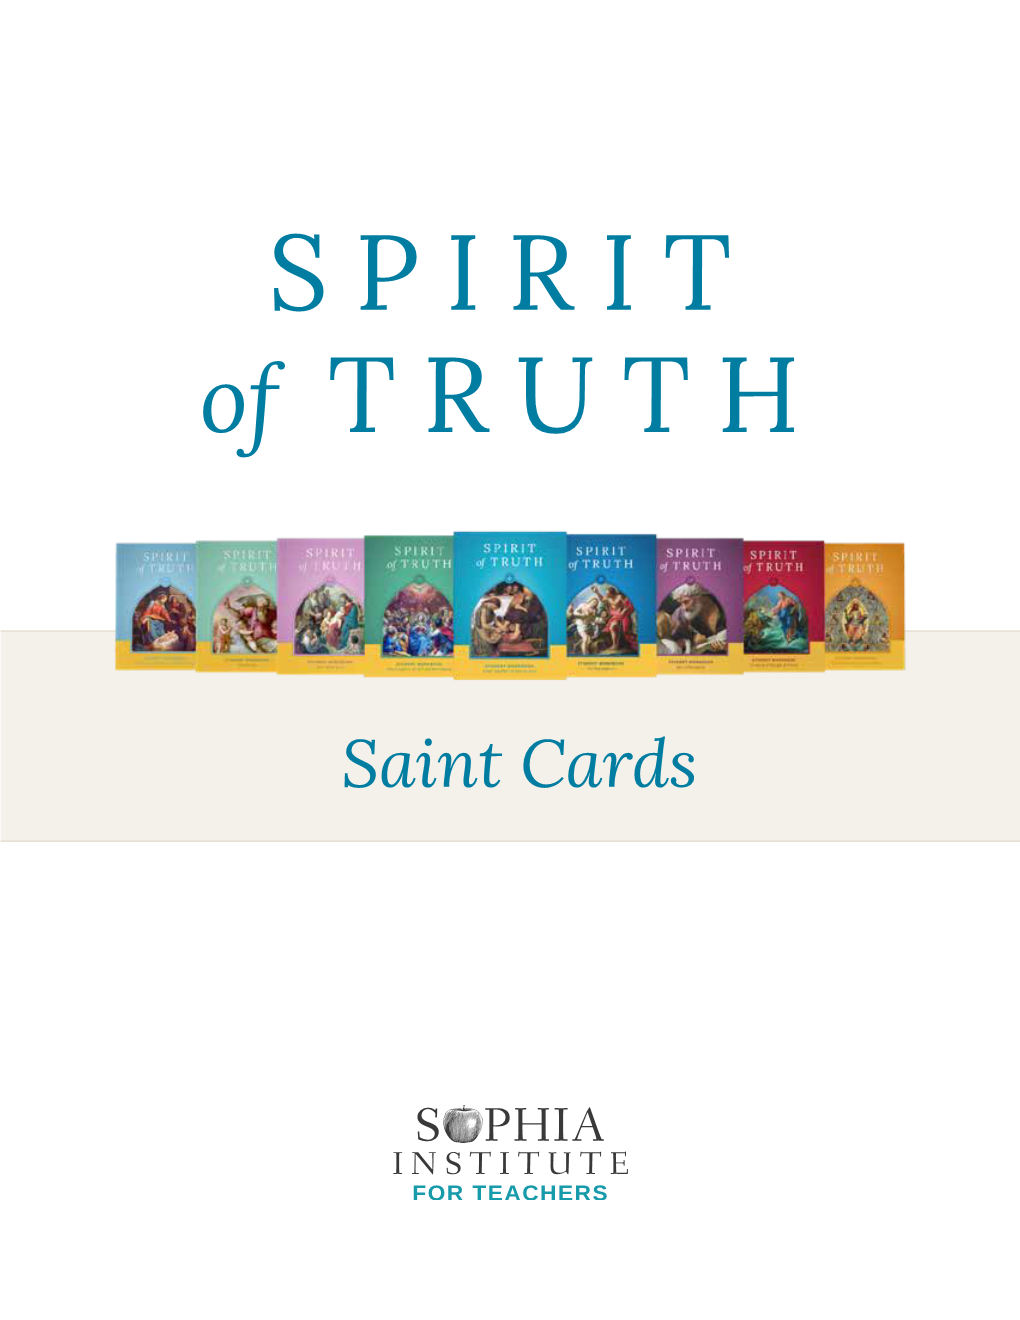 Saint Cards List of Saints